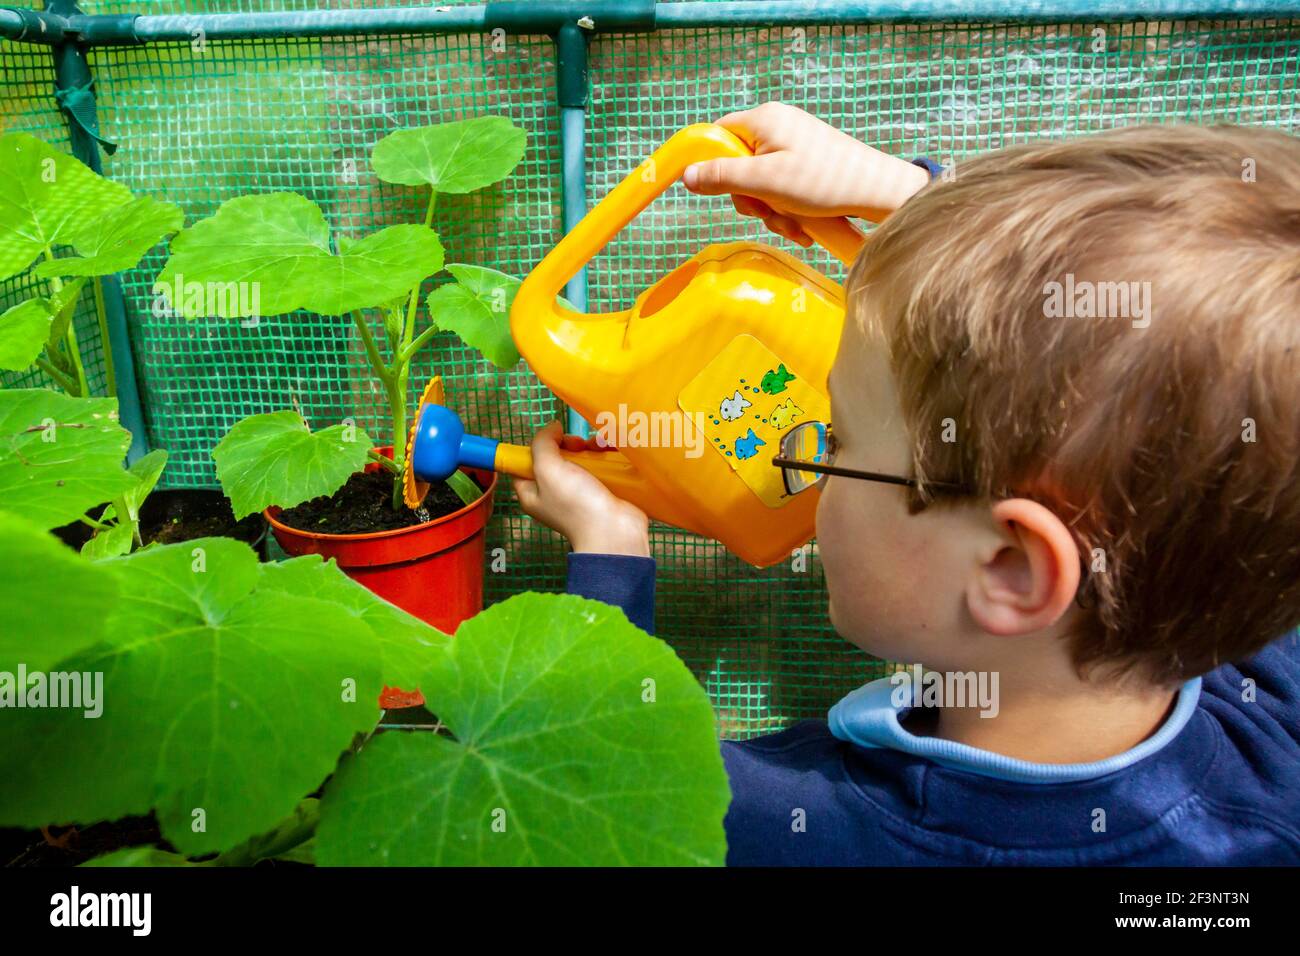 Enfant de l'école primaire utilisant un arrosoir en plastique pour arroser une plante dans le jardin de l'école. Banque D'Images